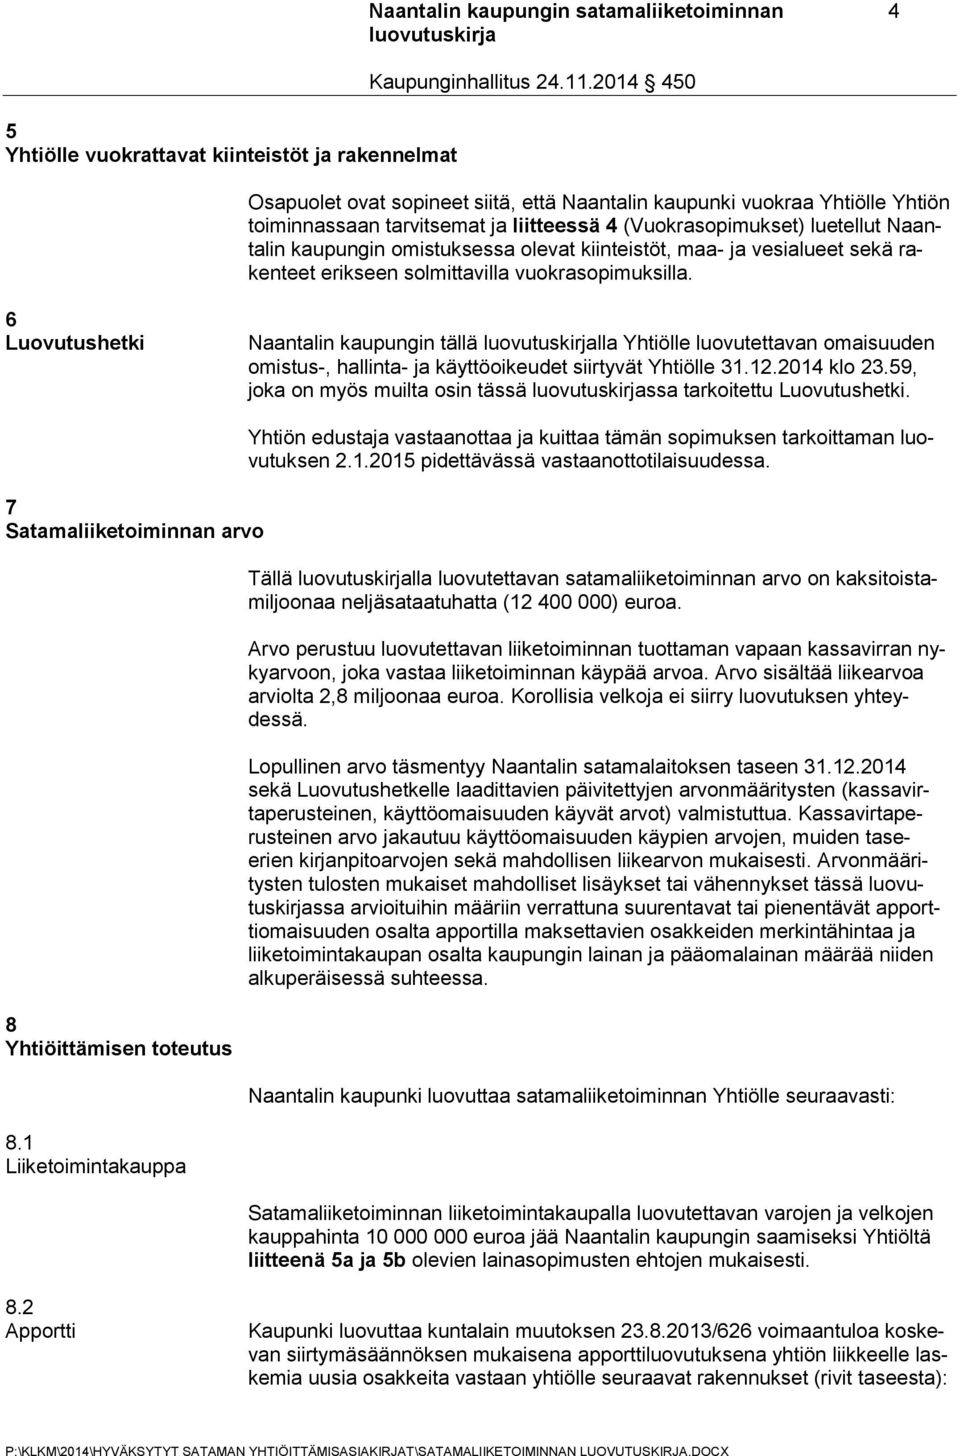 6 Luovutushetki Naantalin kaupungin tällä lla Yhtiölle luovutettavan omaisuuden omistus-, hallinta- ja käyttöoikeudet siirtyvät Yhtiölle 31.12.2014 klo 23.